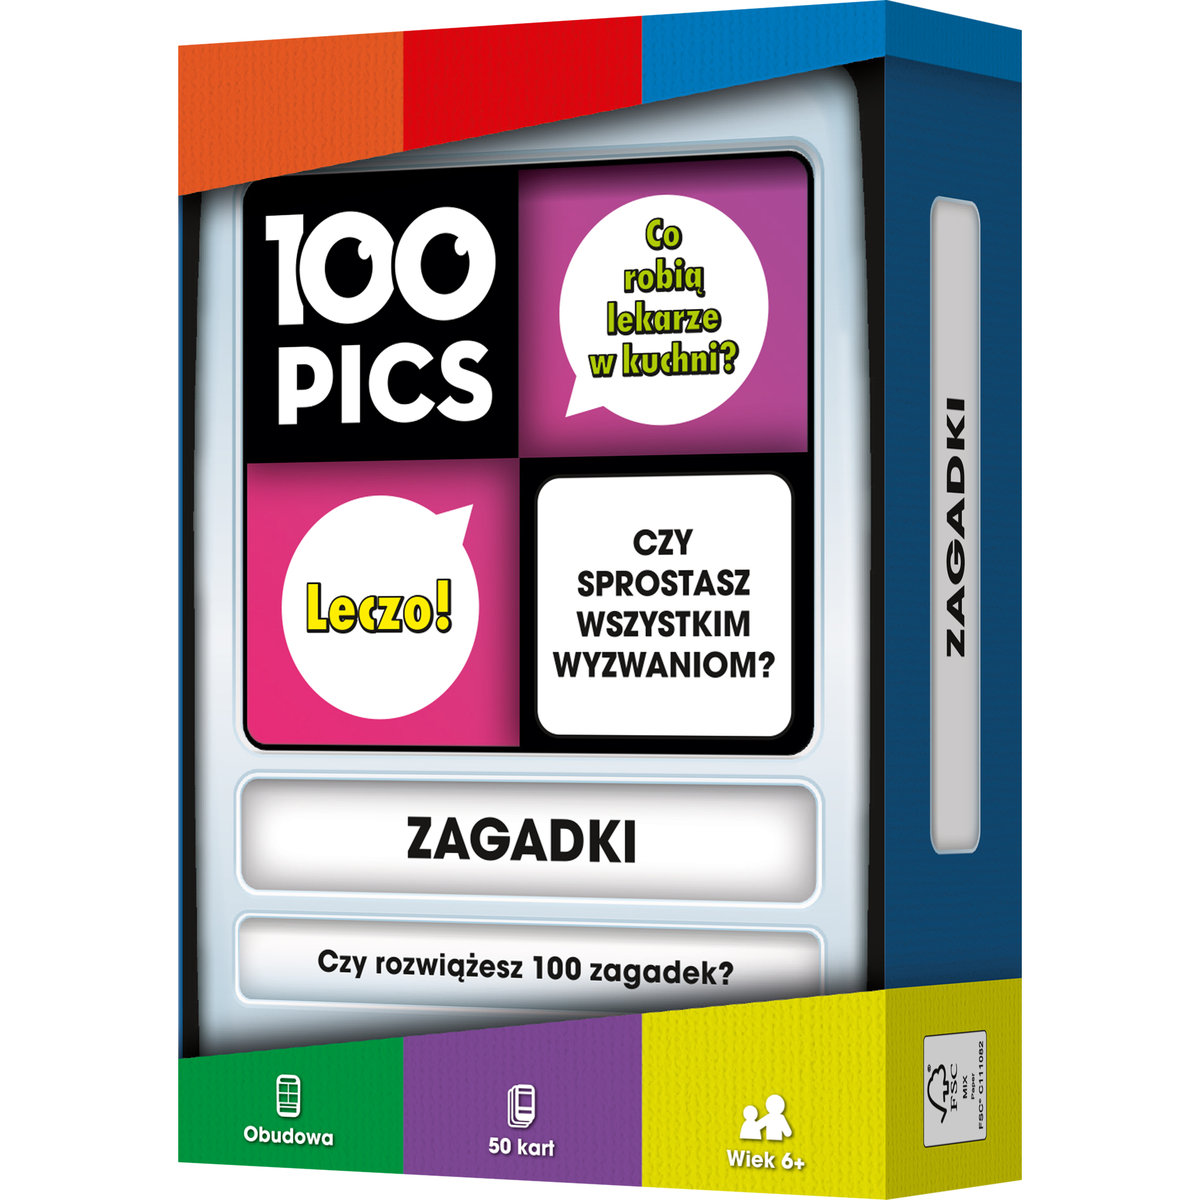 100 Pics: Zagadki gra rodzinna Rebel